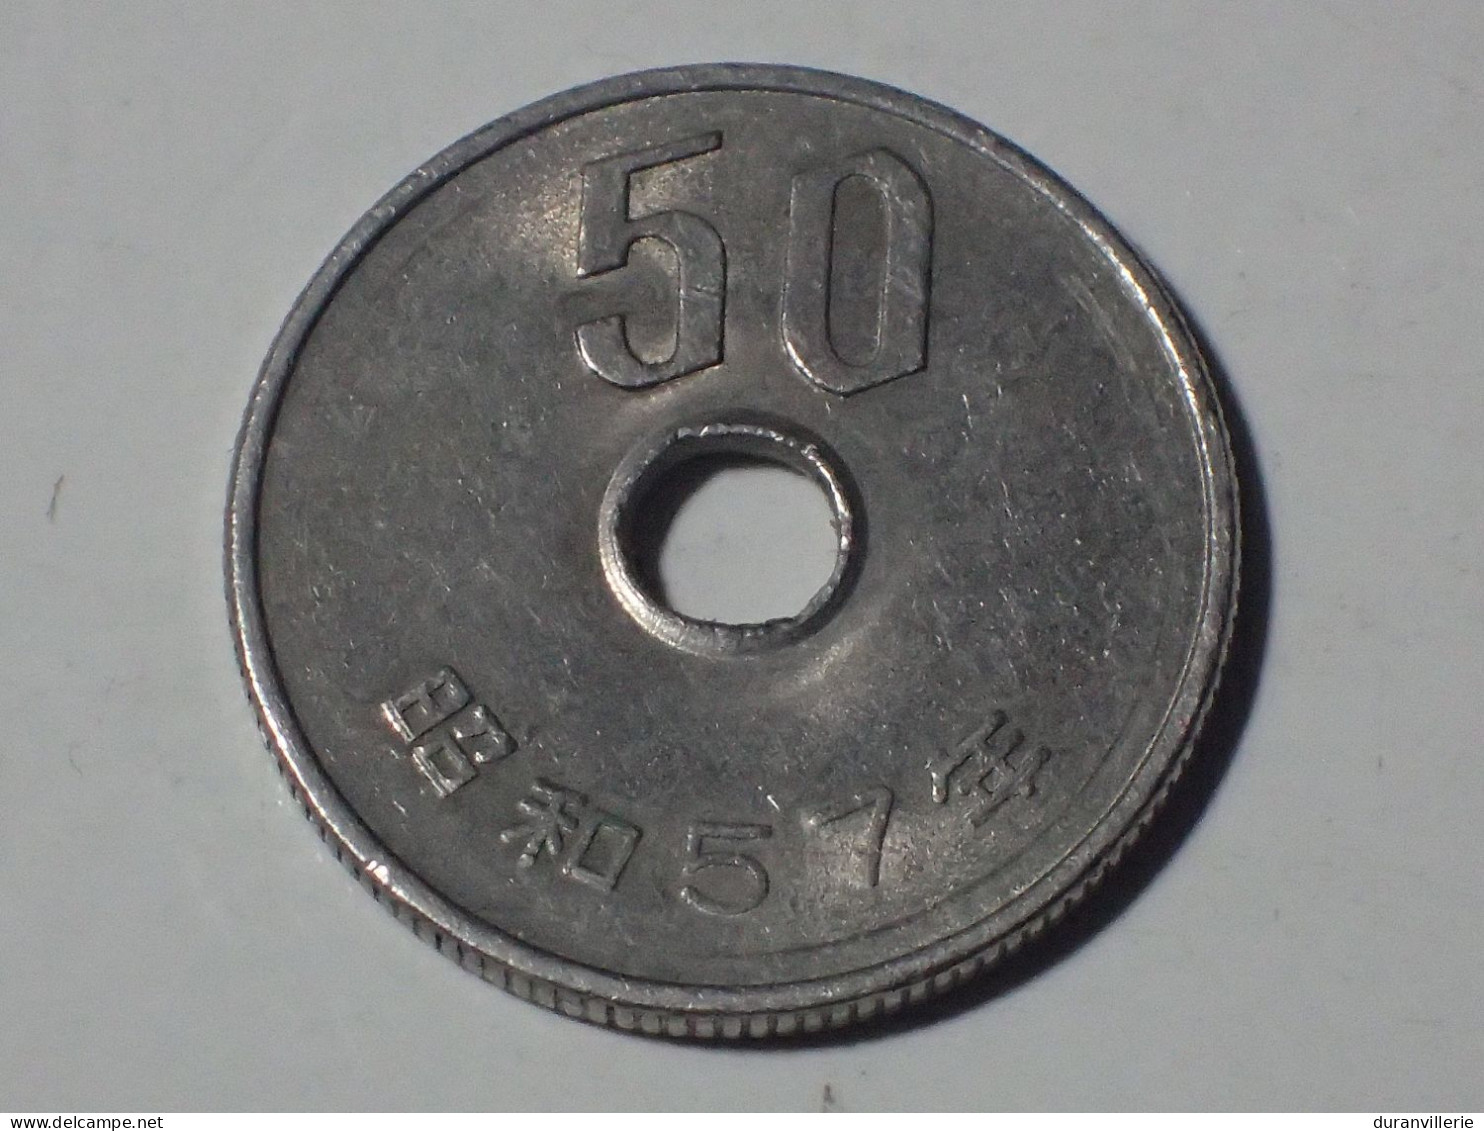 MONNAIE 50 Yen Japon (Année 57) 1982 - Japan